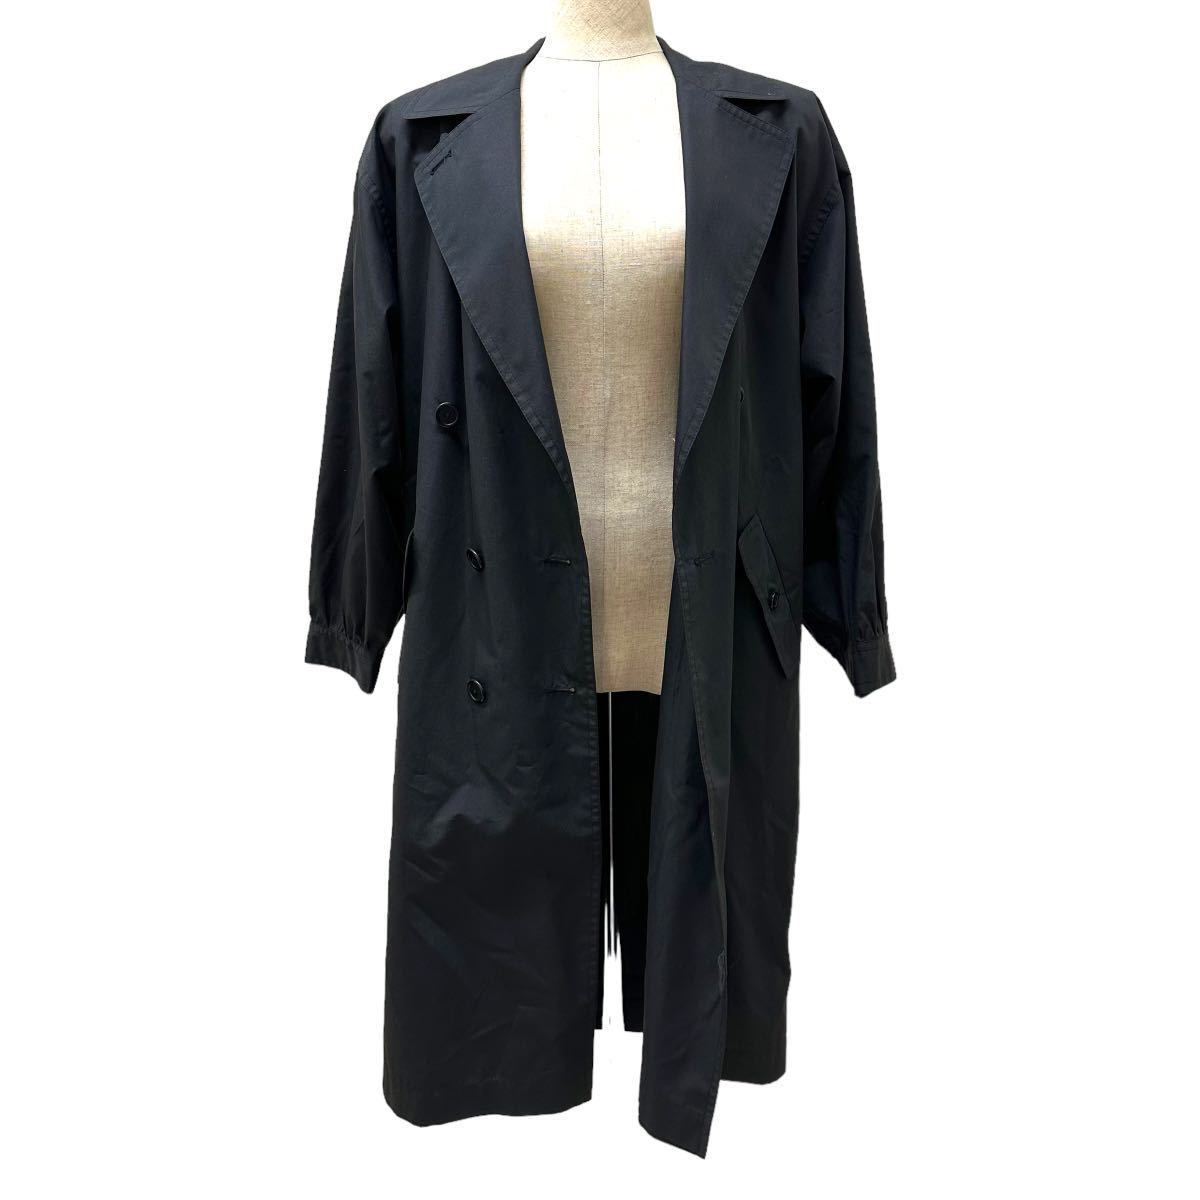 a324N jun ashida Jun asida trench coat black sizeS